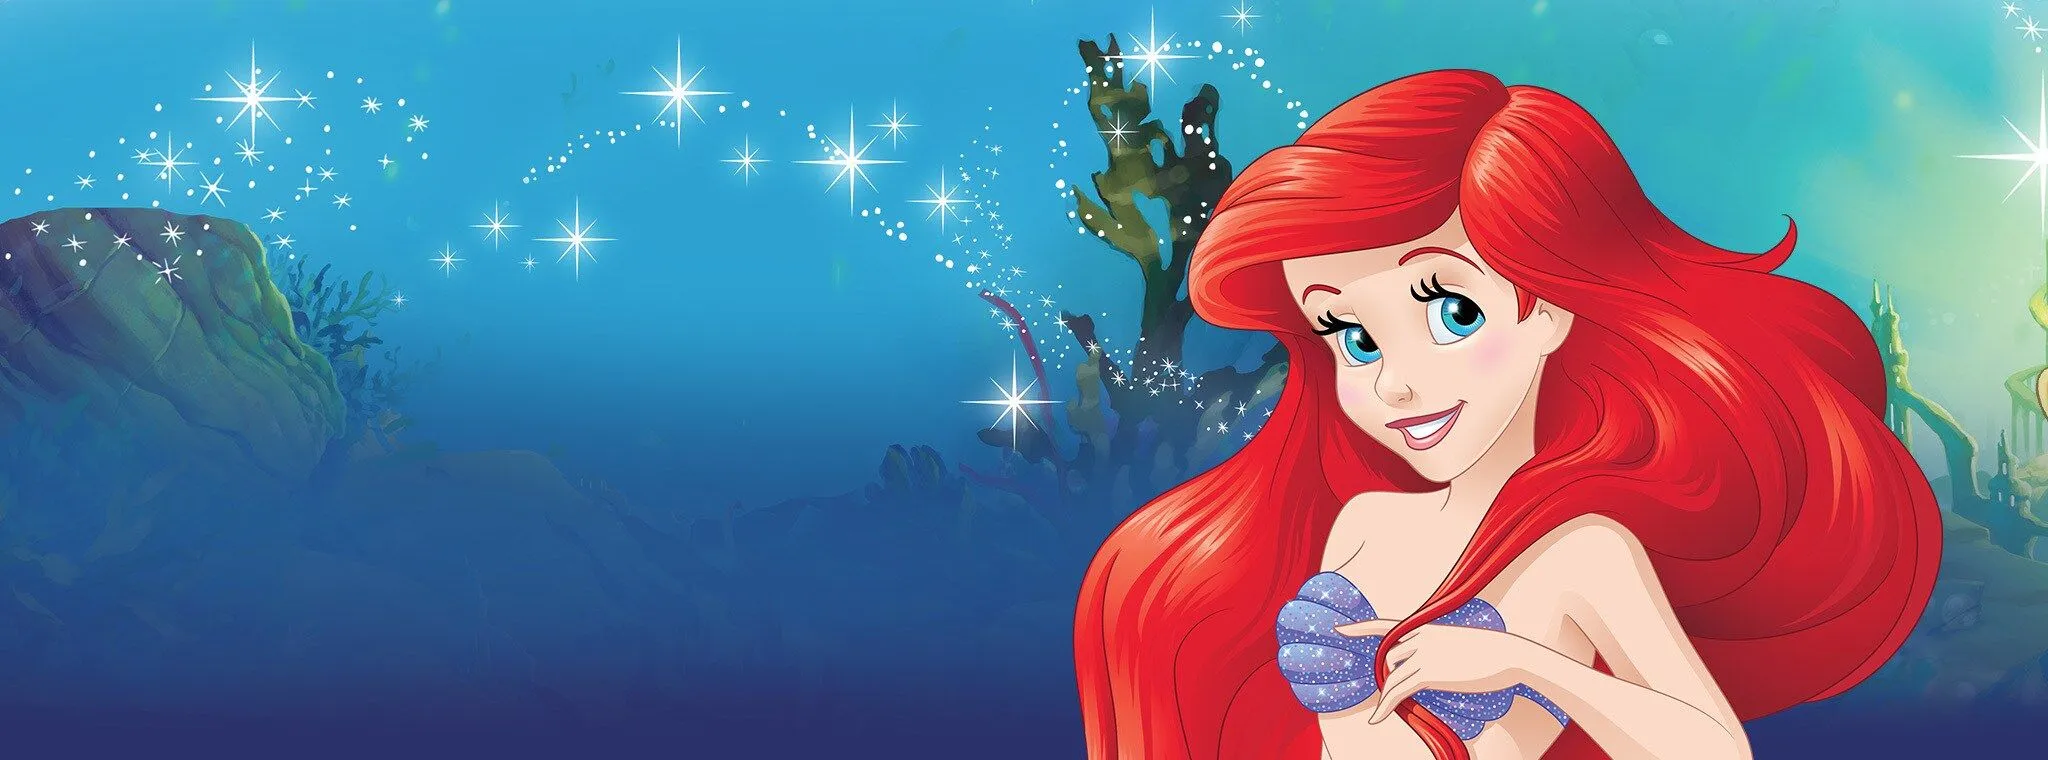 Videos y juegos de la Princesa Ariel | Página oficial Princesas Disney